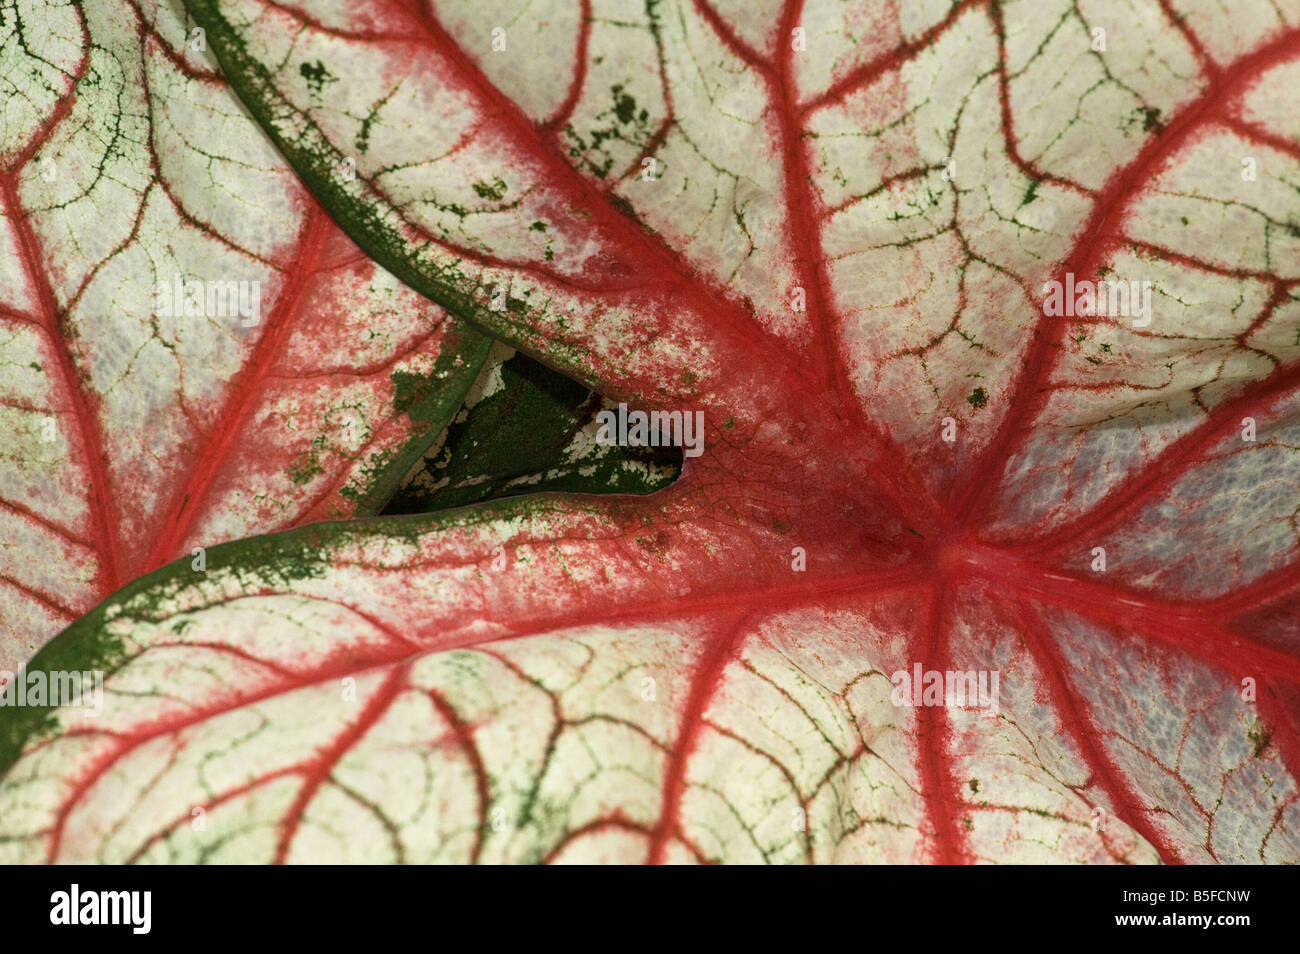 Caladium feuilles présentant des nervures frappantes pattern Banque D'Images